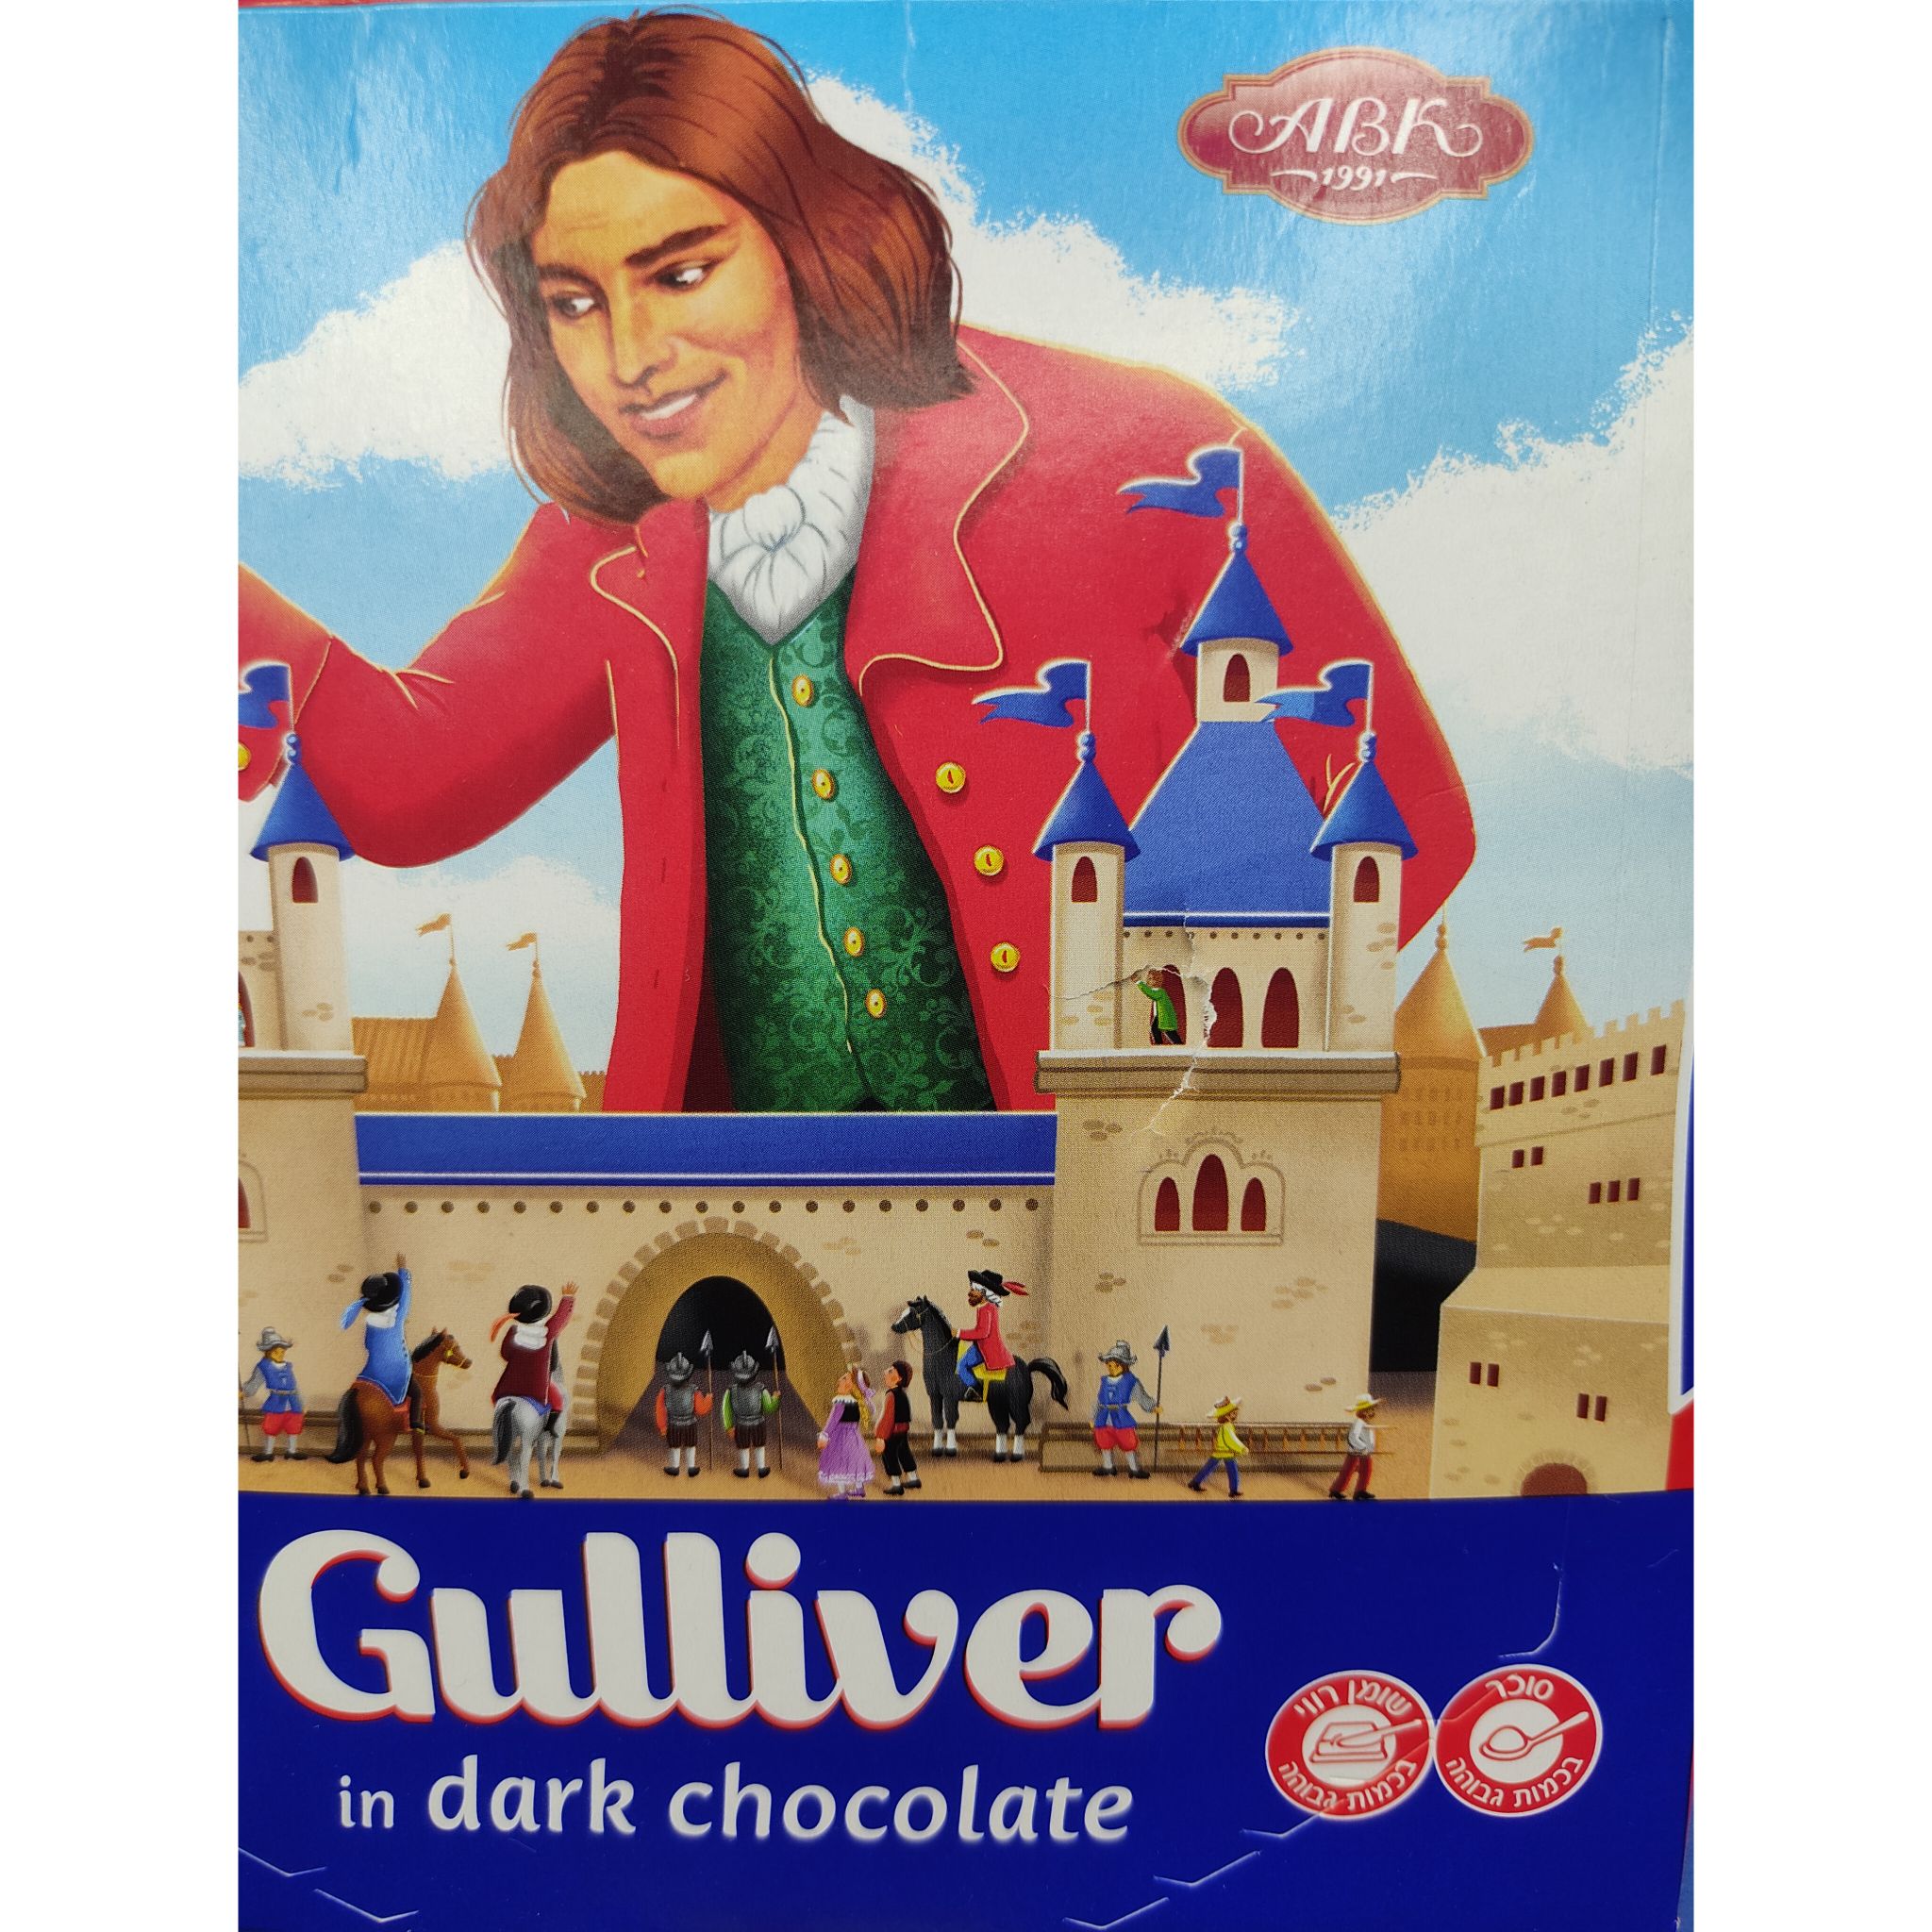 شکلات کادویی مغزدار کرمی گالیور بسته ی 5 عددی Gulliver (125 گرم)